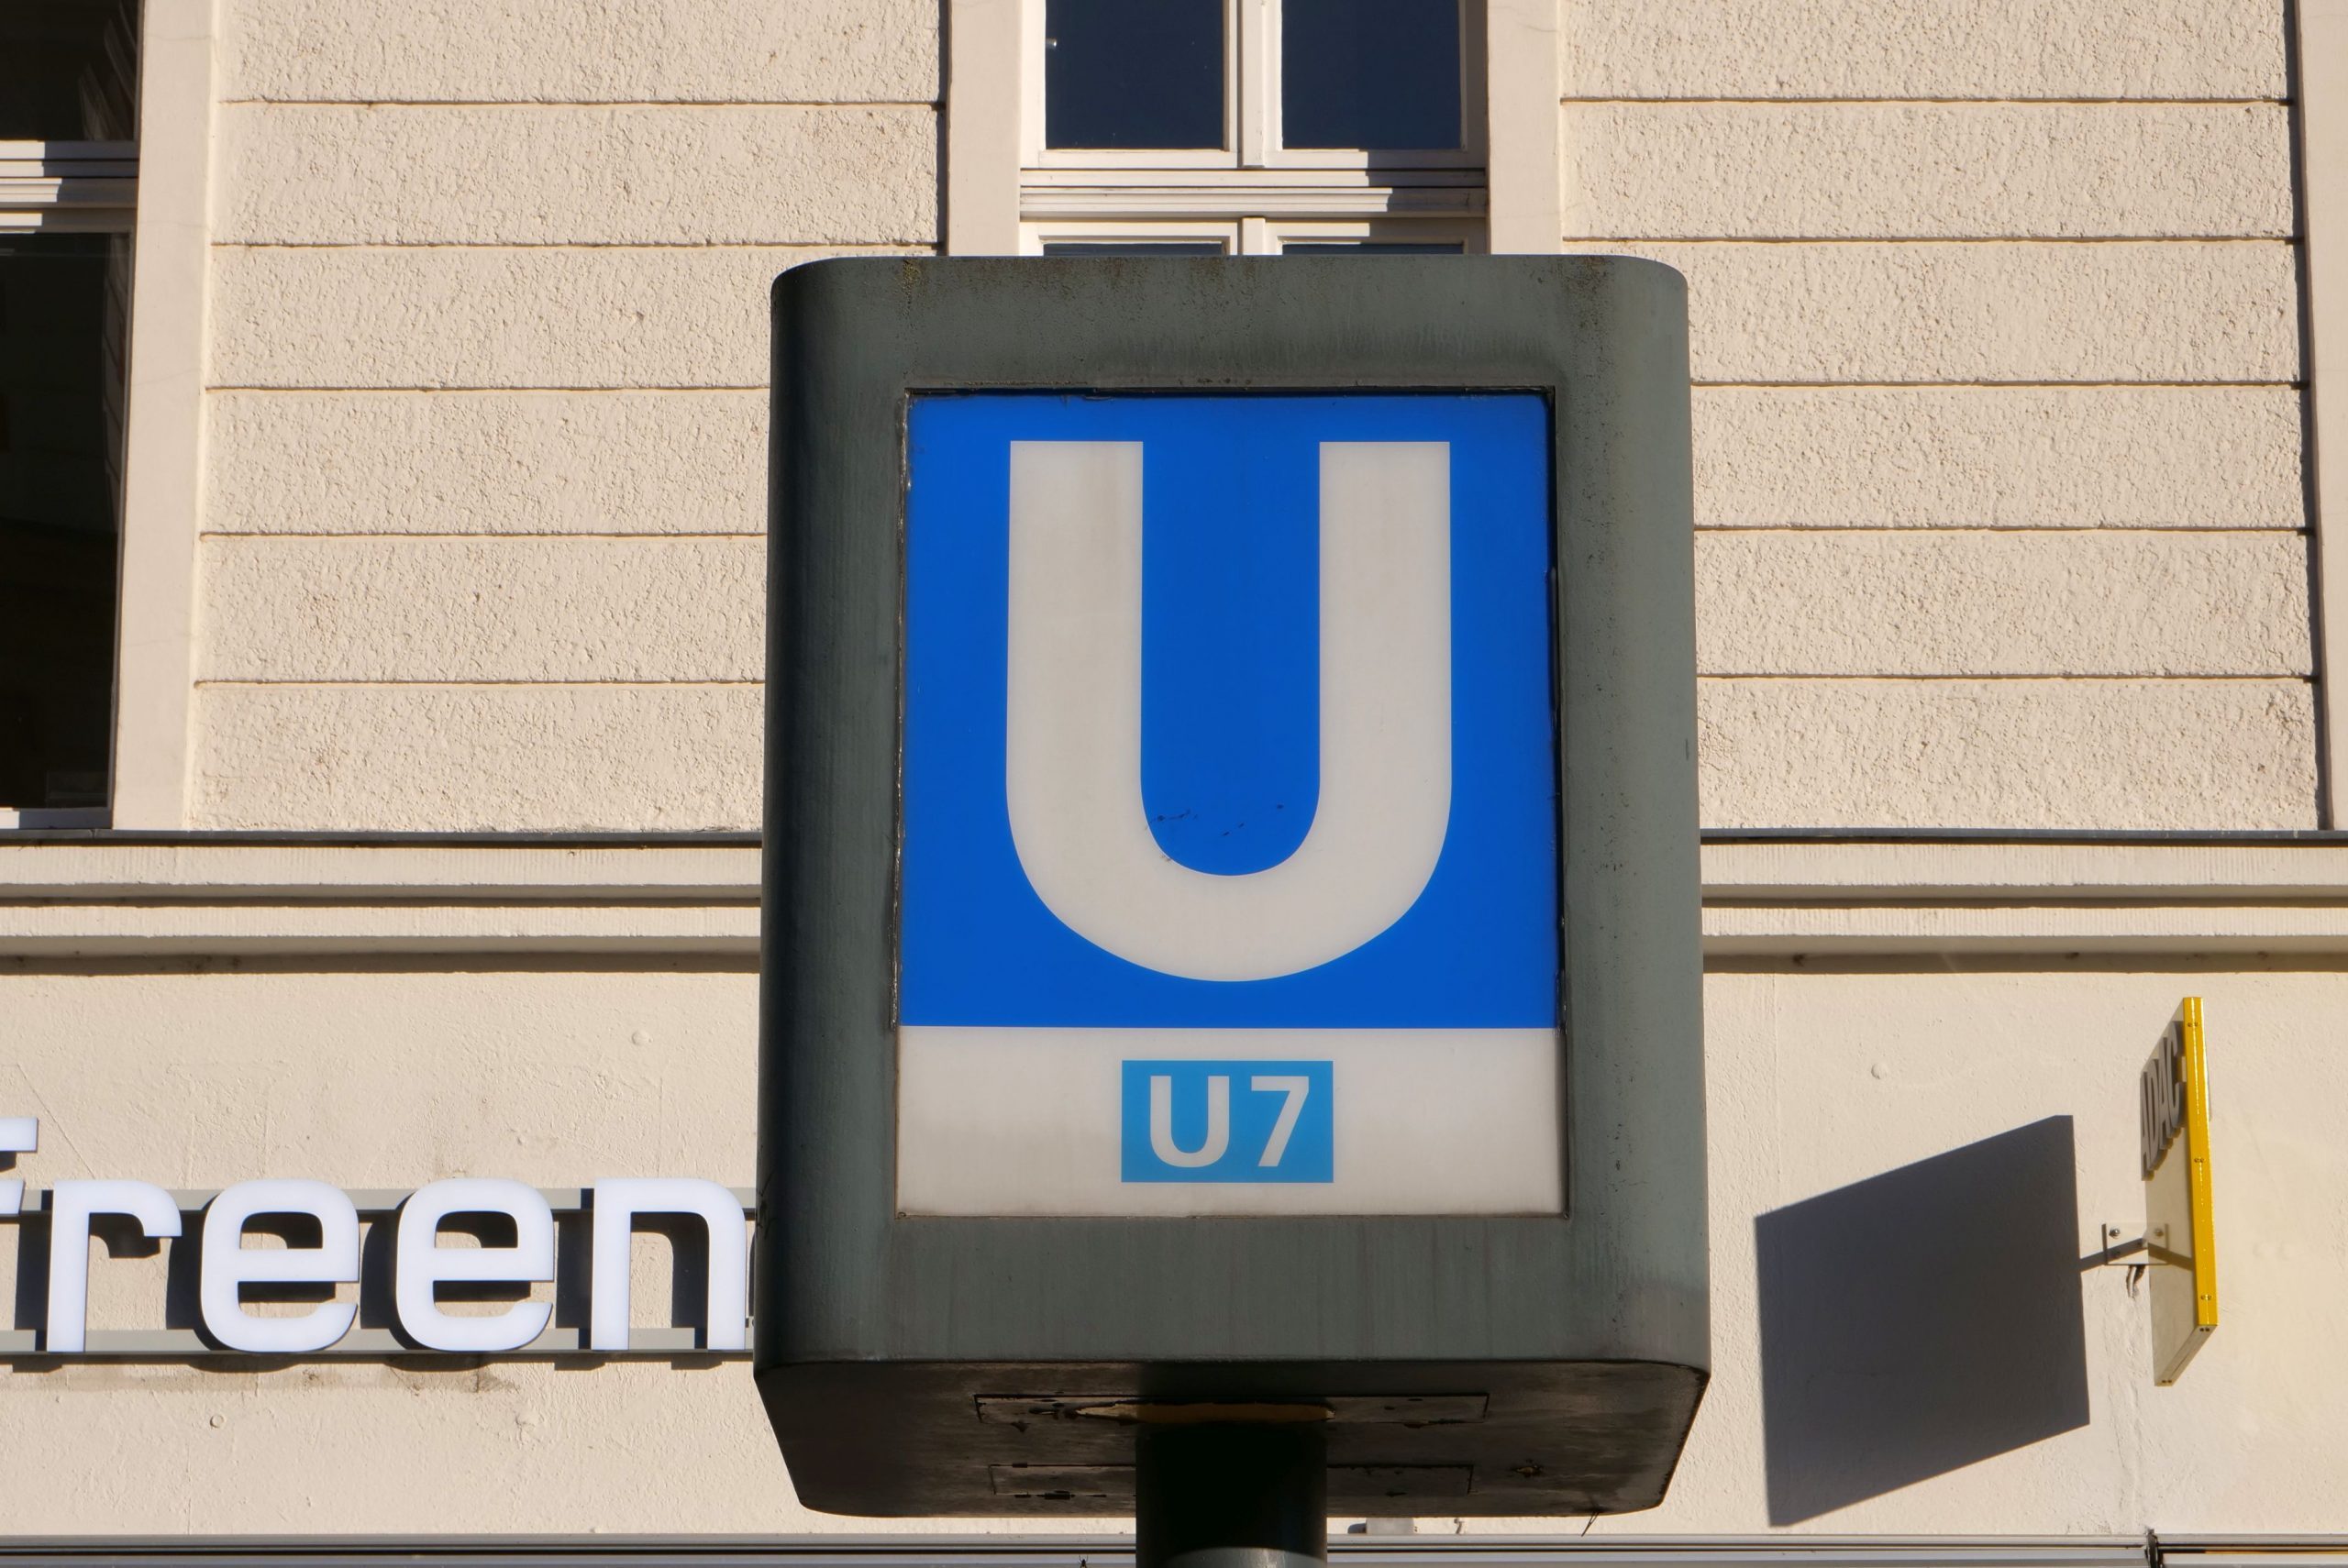 Ausbau der U7 in Spandau hat weiterhin Priorität